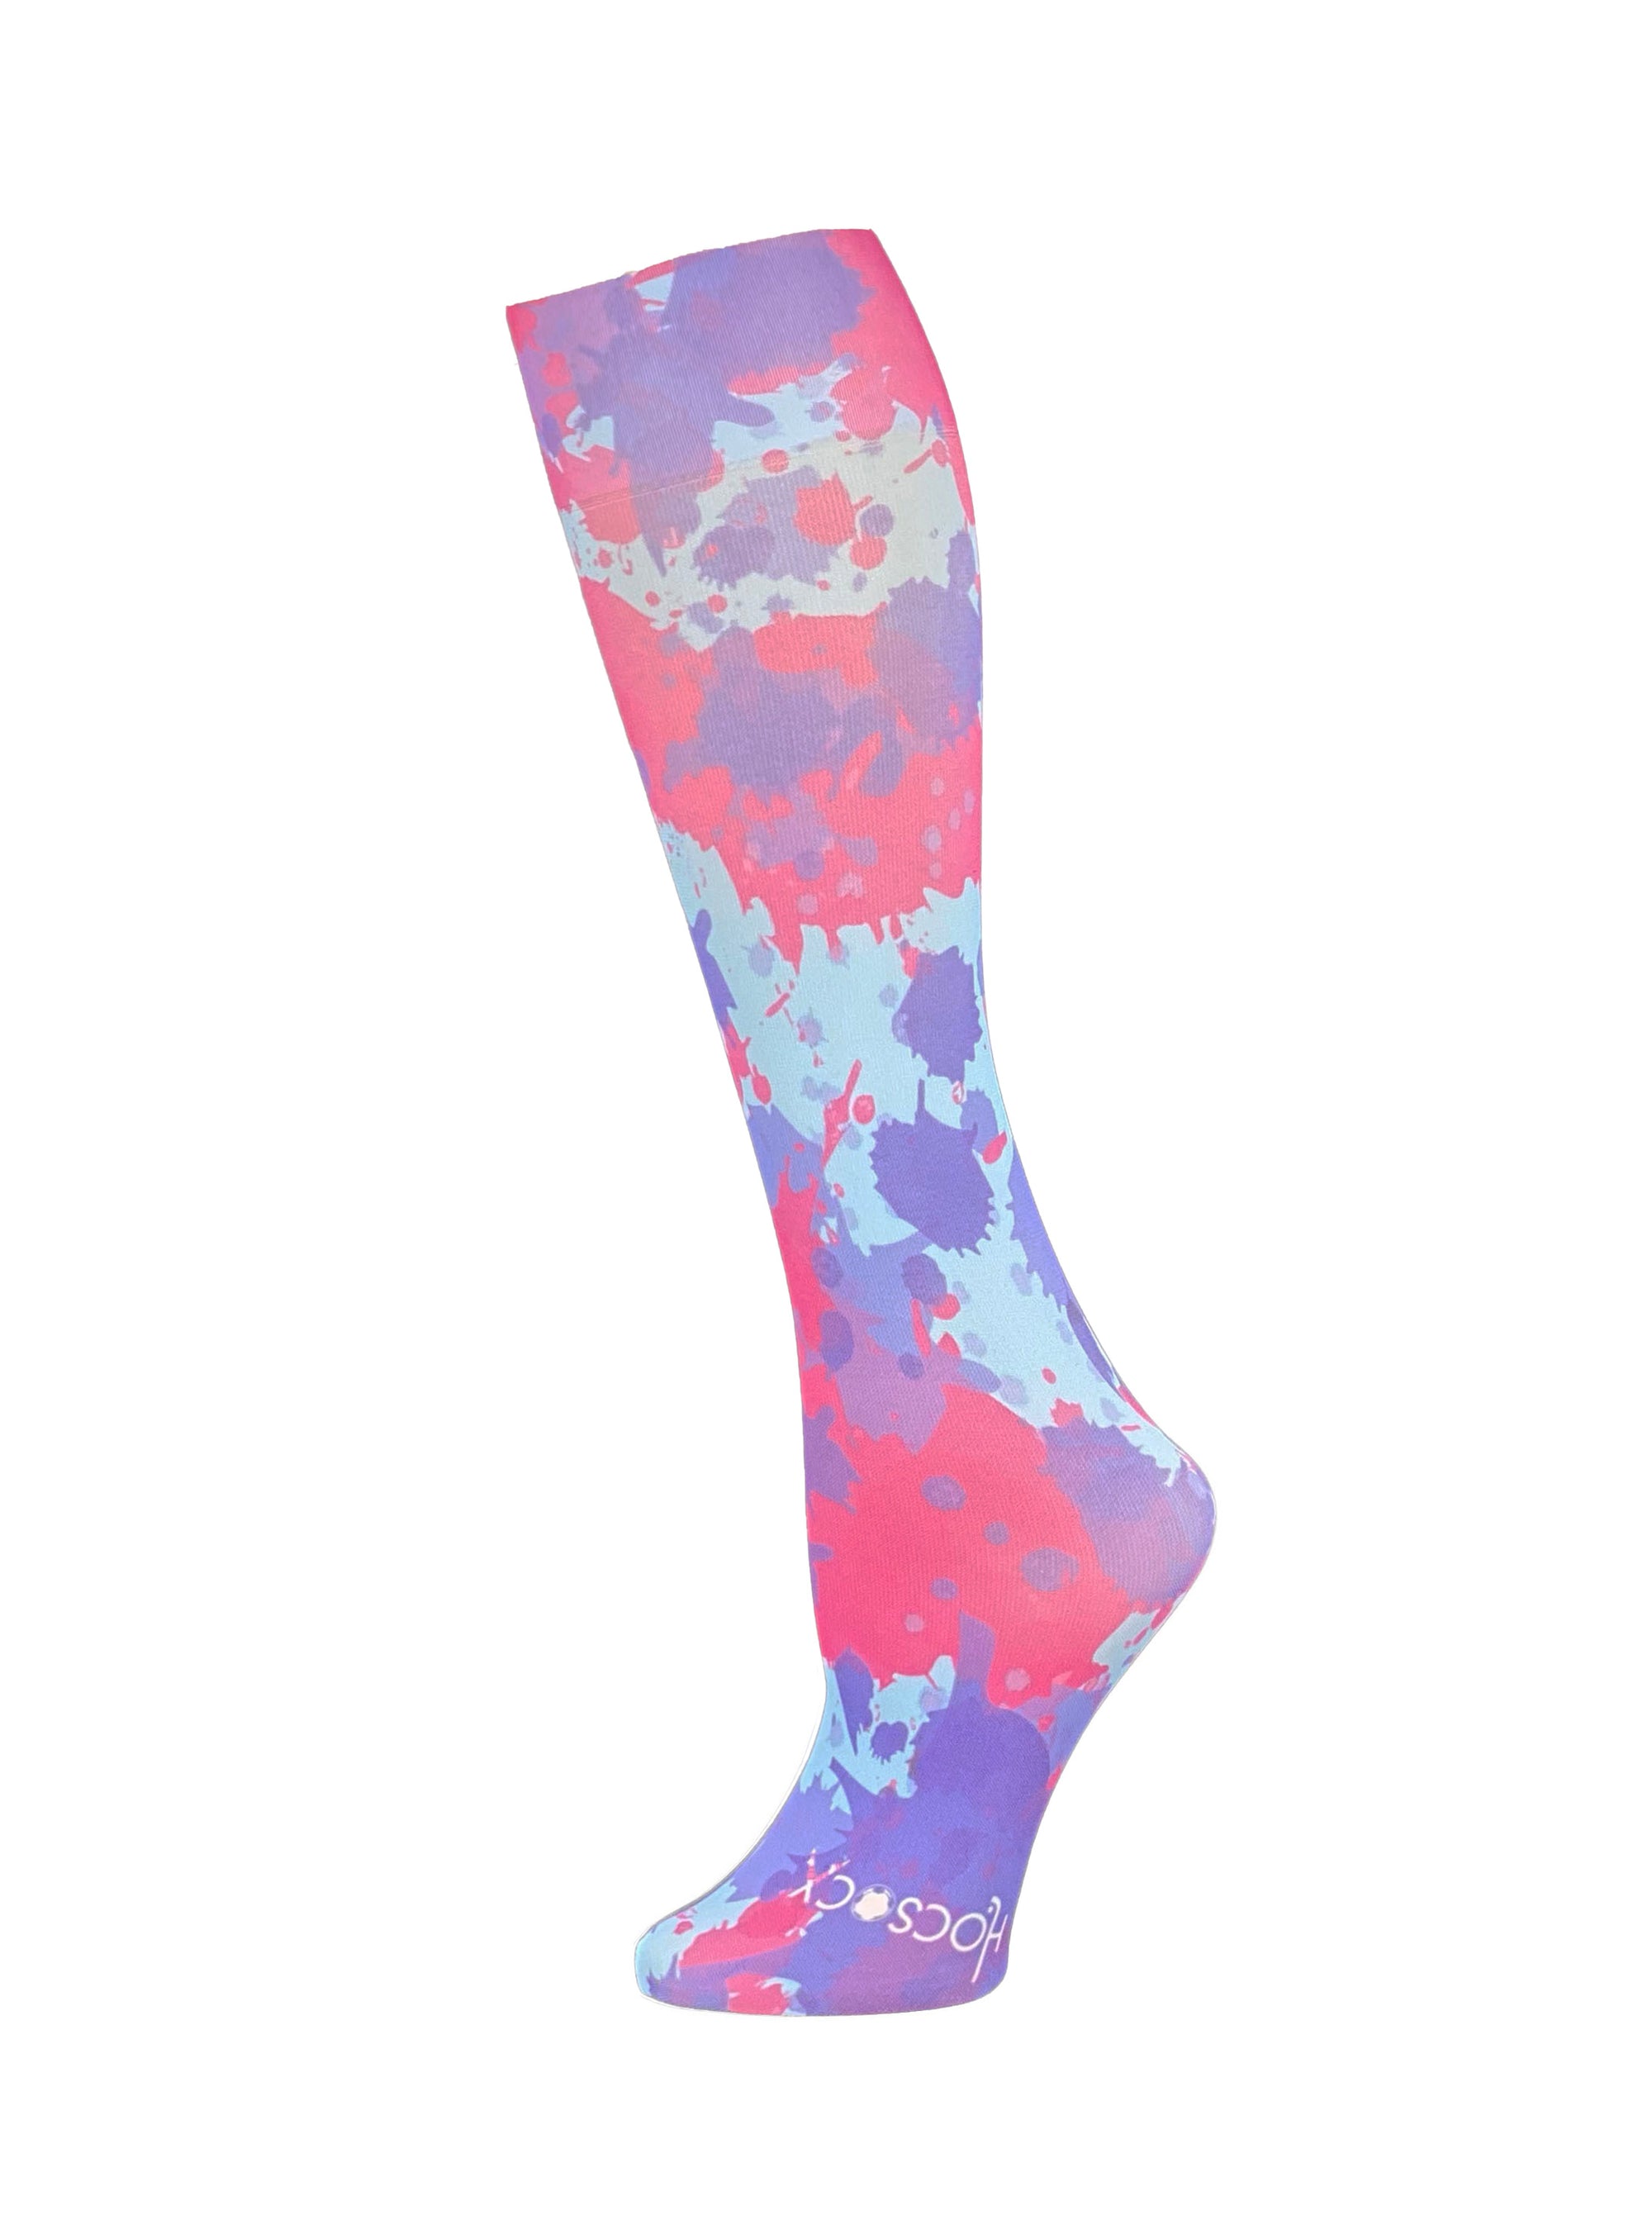 Splatter Print Socks